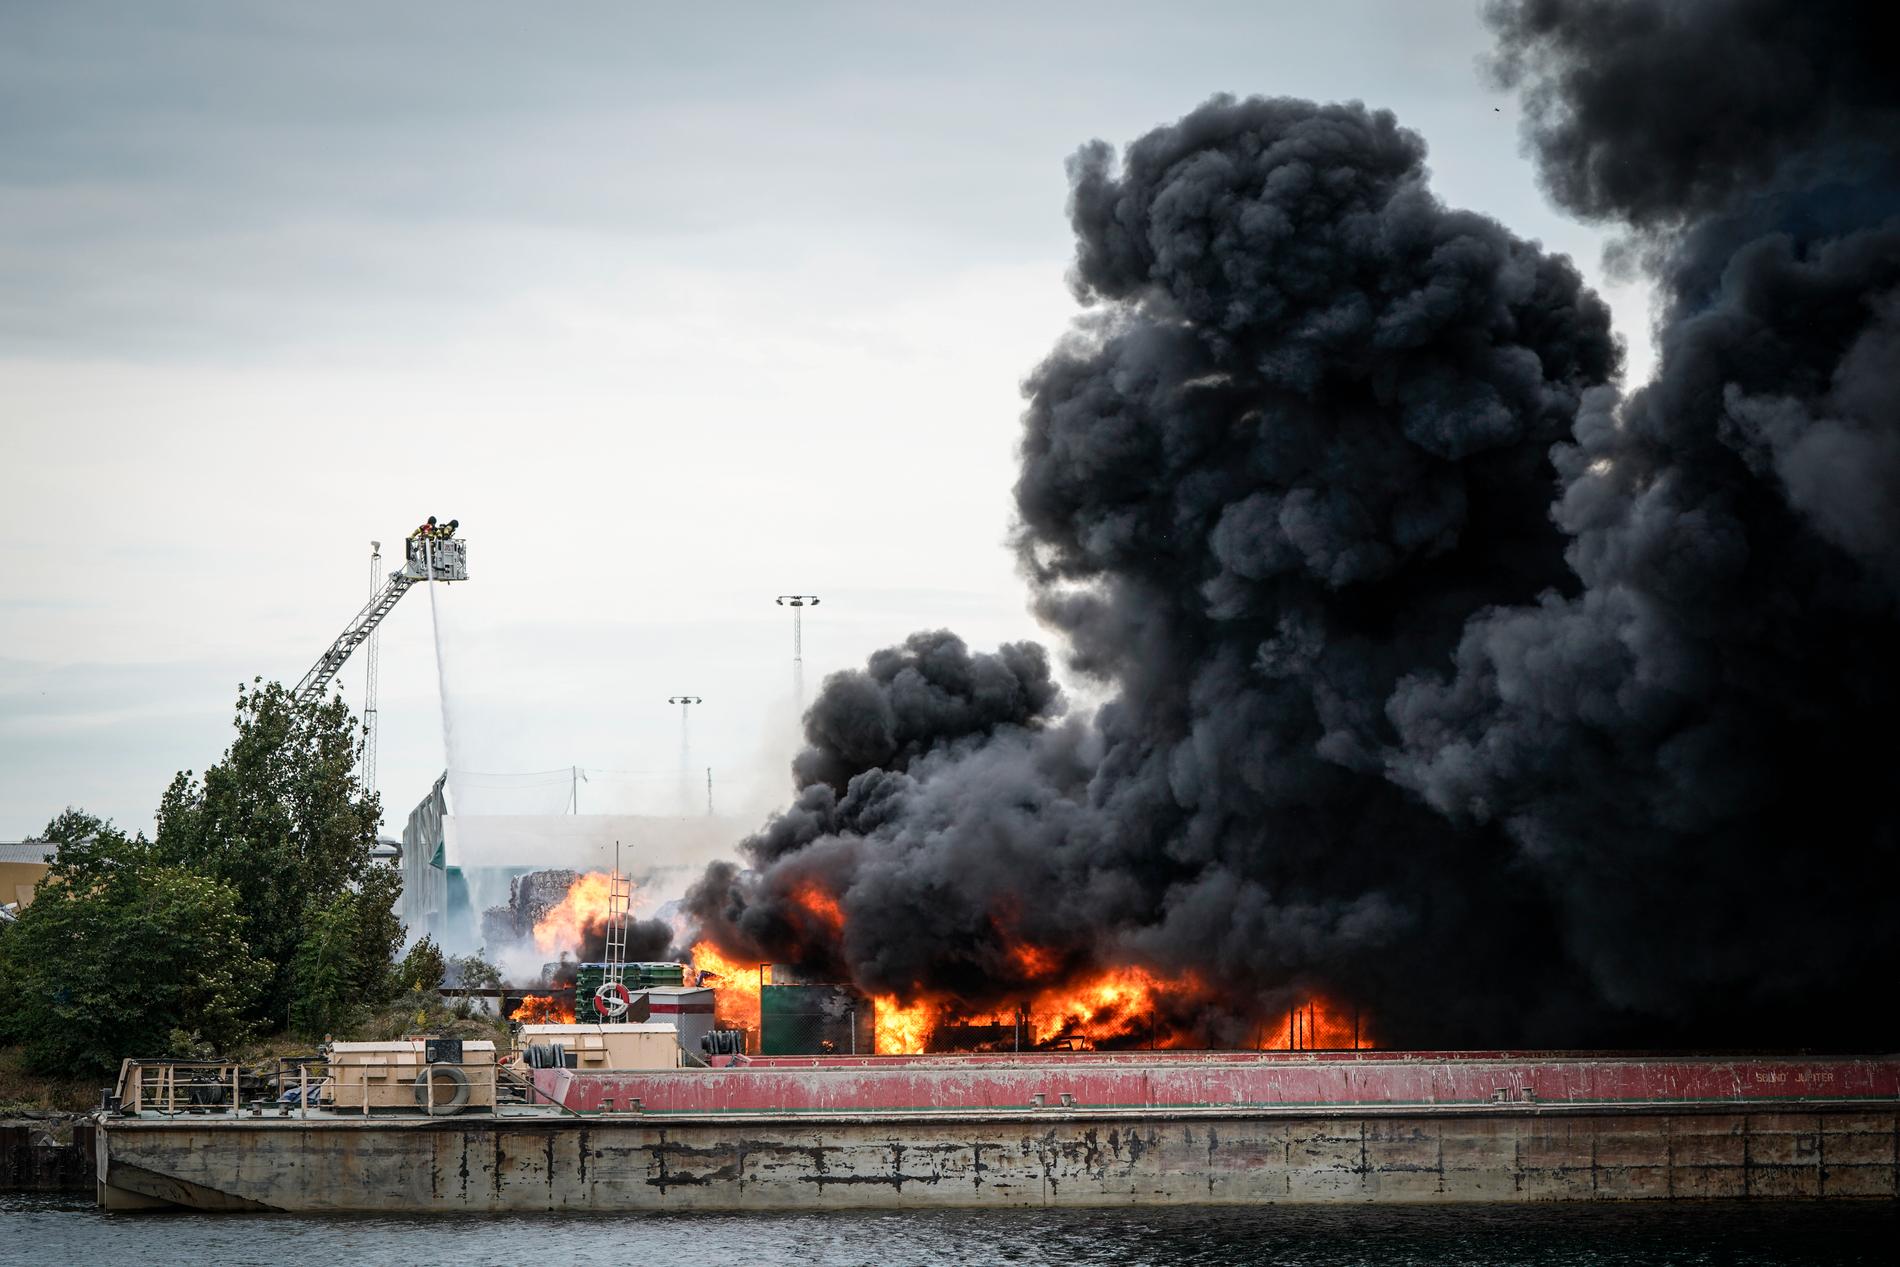 Allmänheten i Norra hamnen i Malmö uppmanades att hålla sig inomhus under torsdagen sedan en brand på en återvinningsanläggning orsakat kraftig rökutveckling i området.